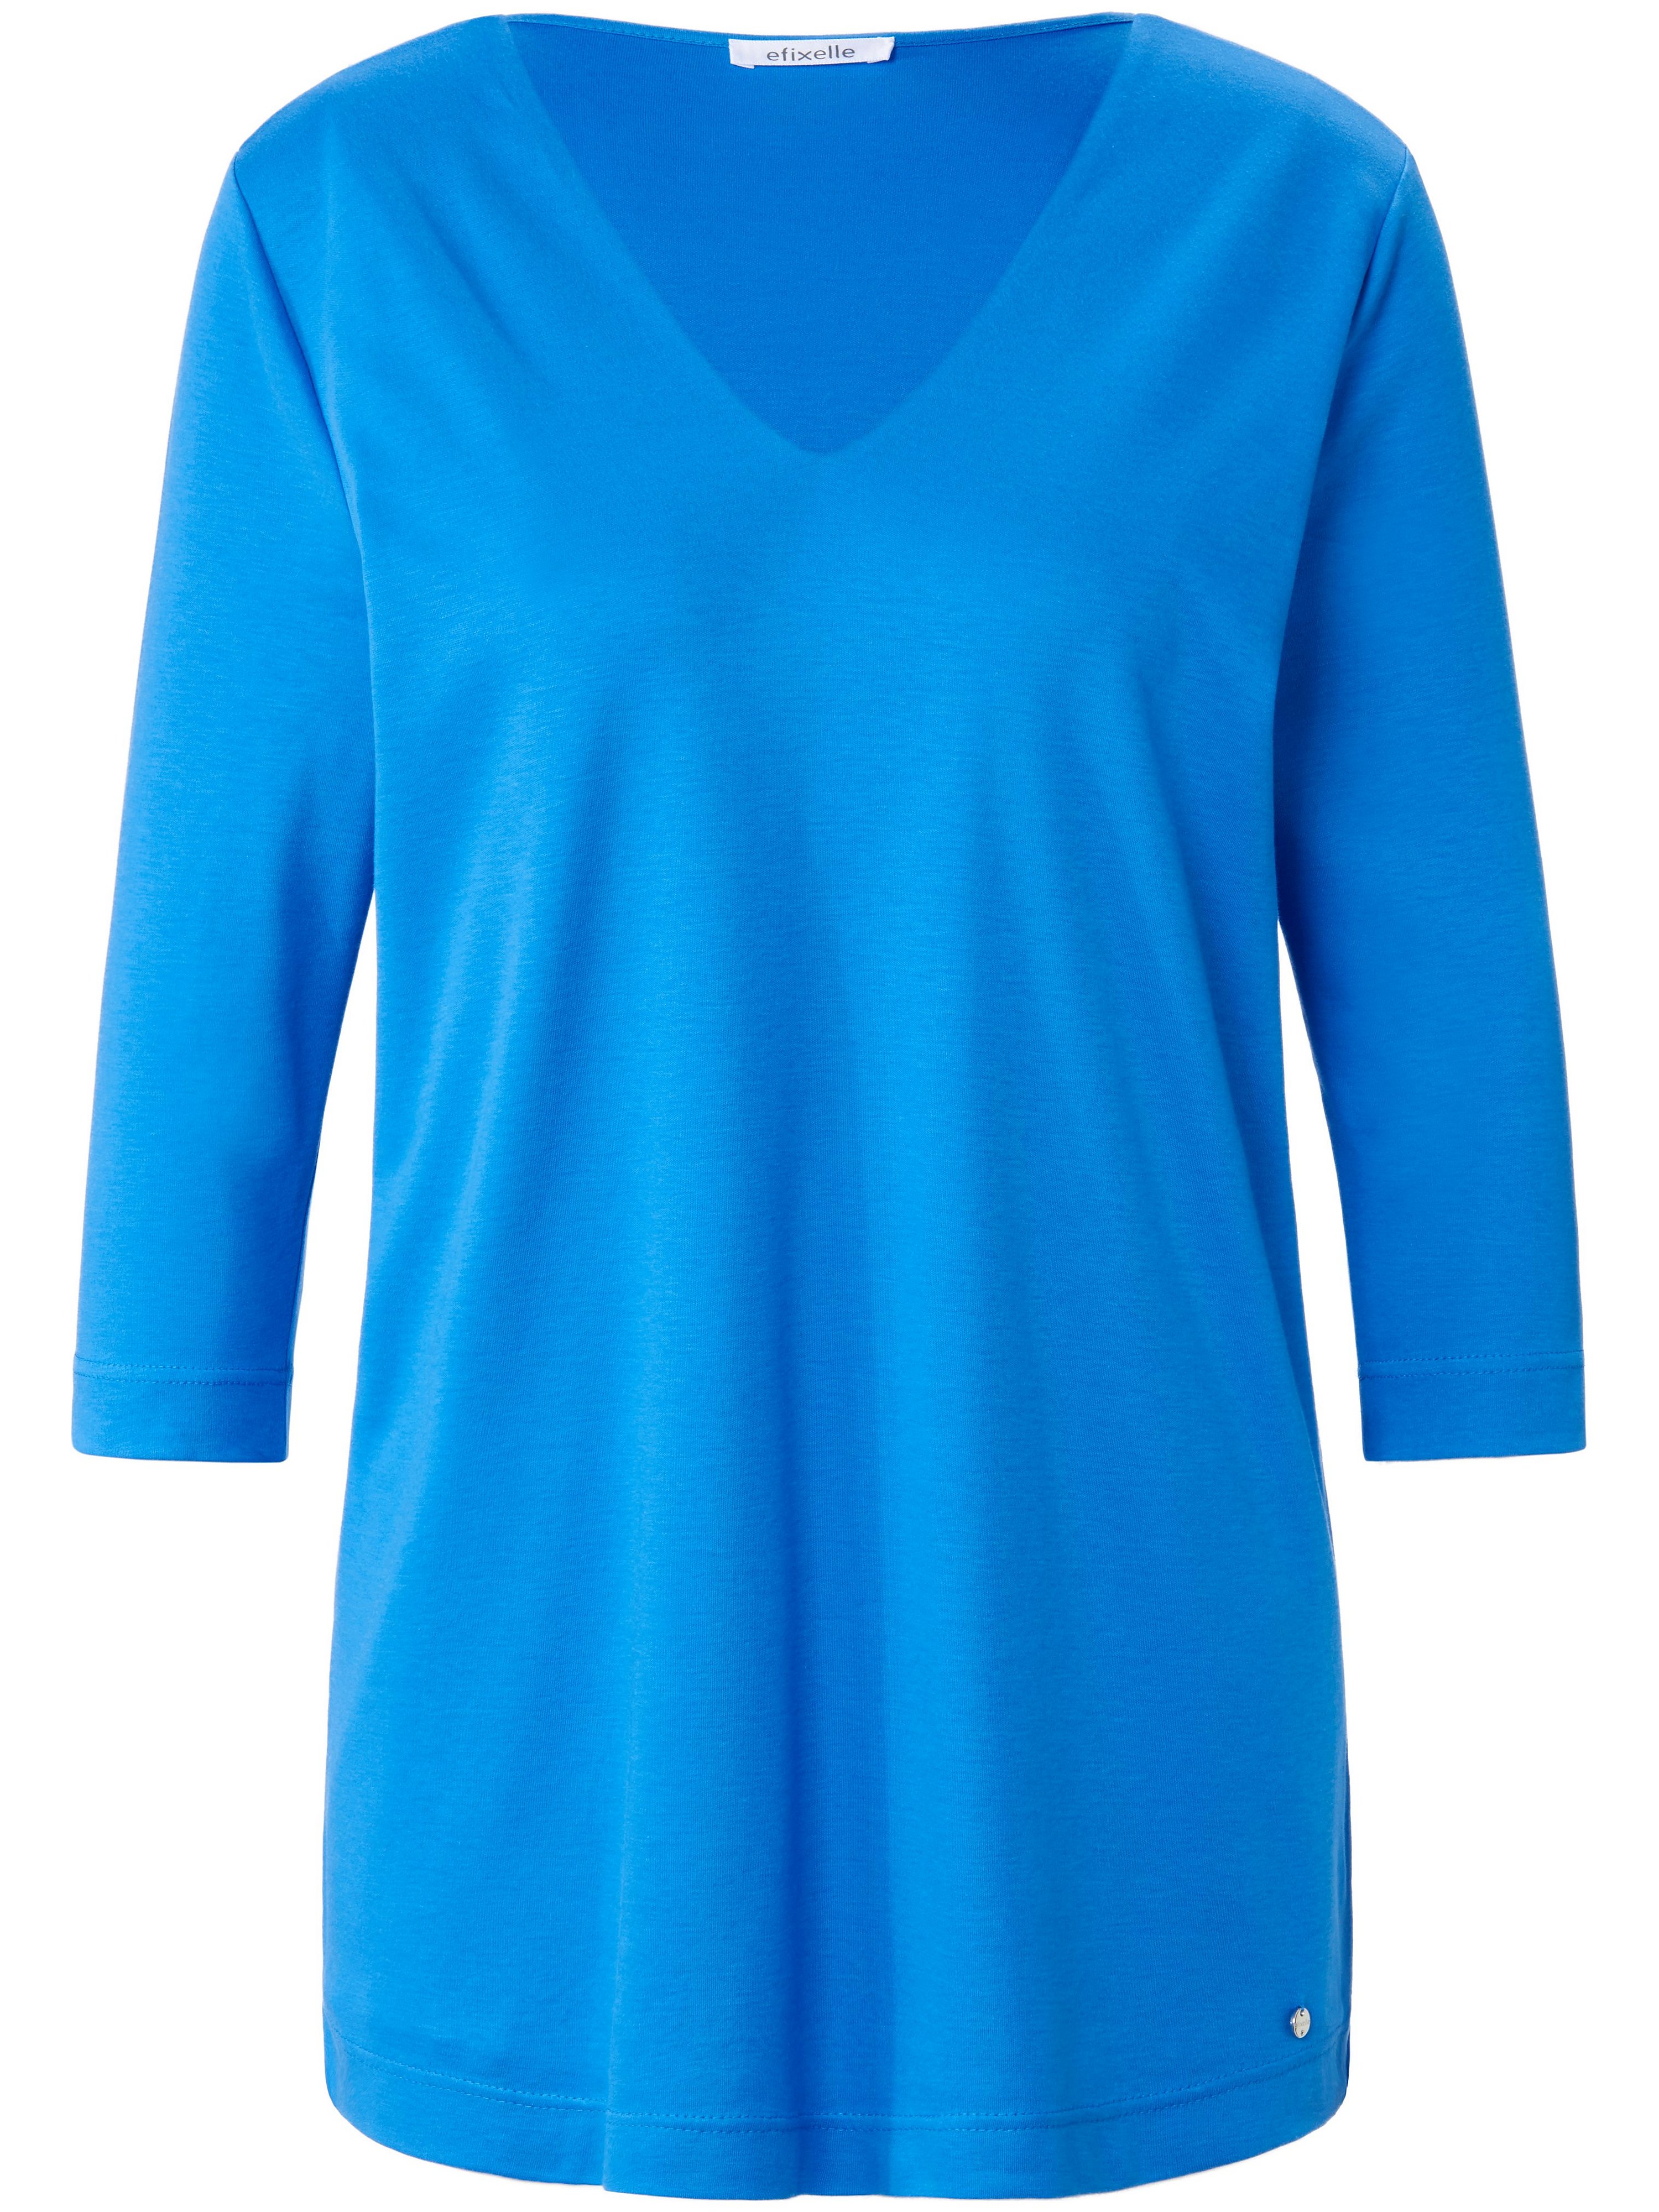 Le T-shirt 100% coton  Efixelle bleu taille 40